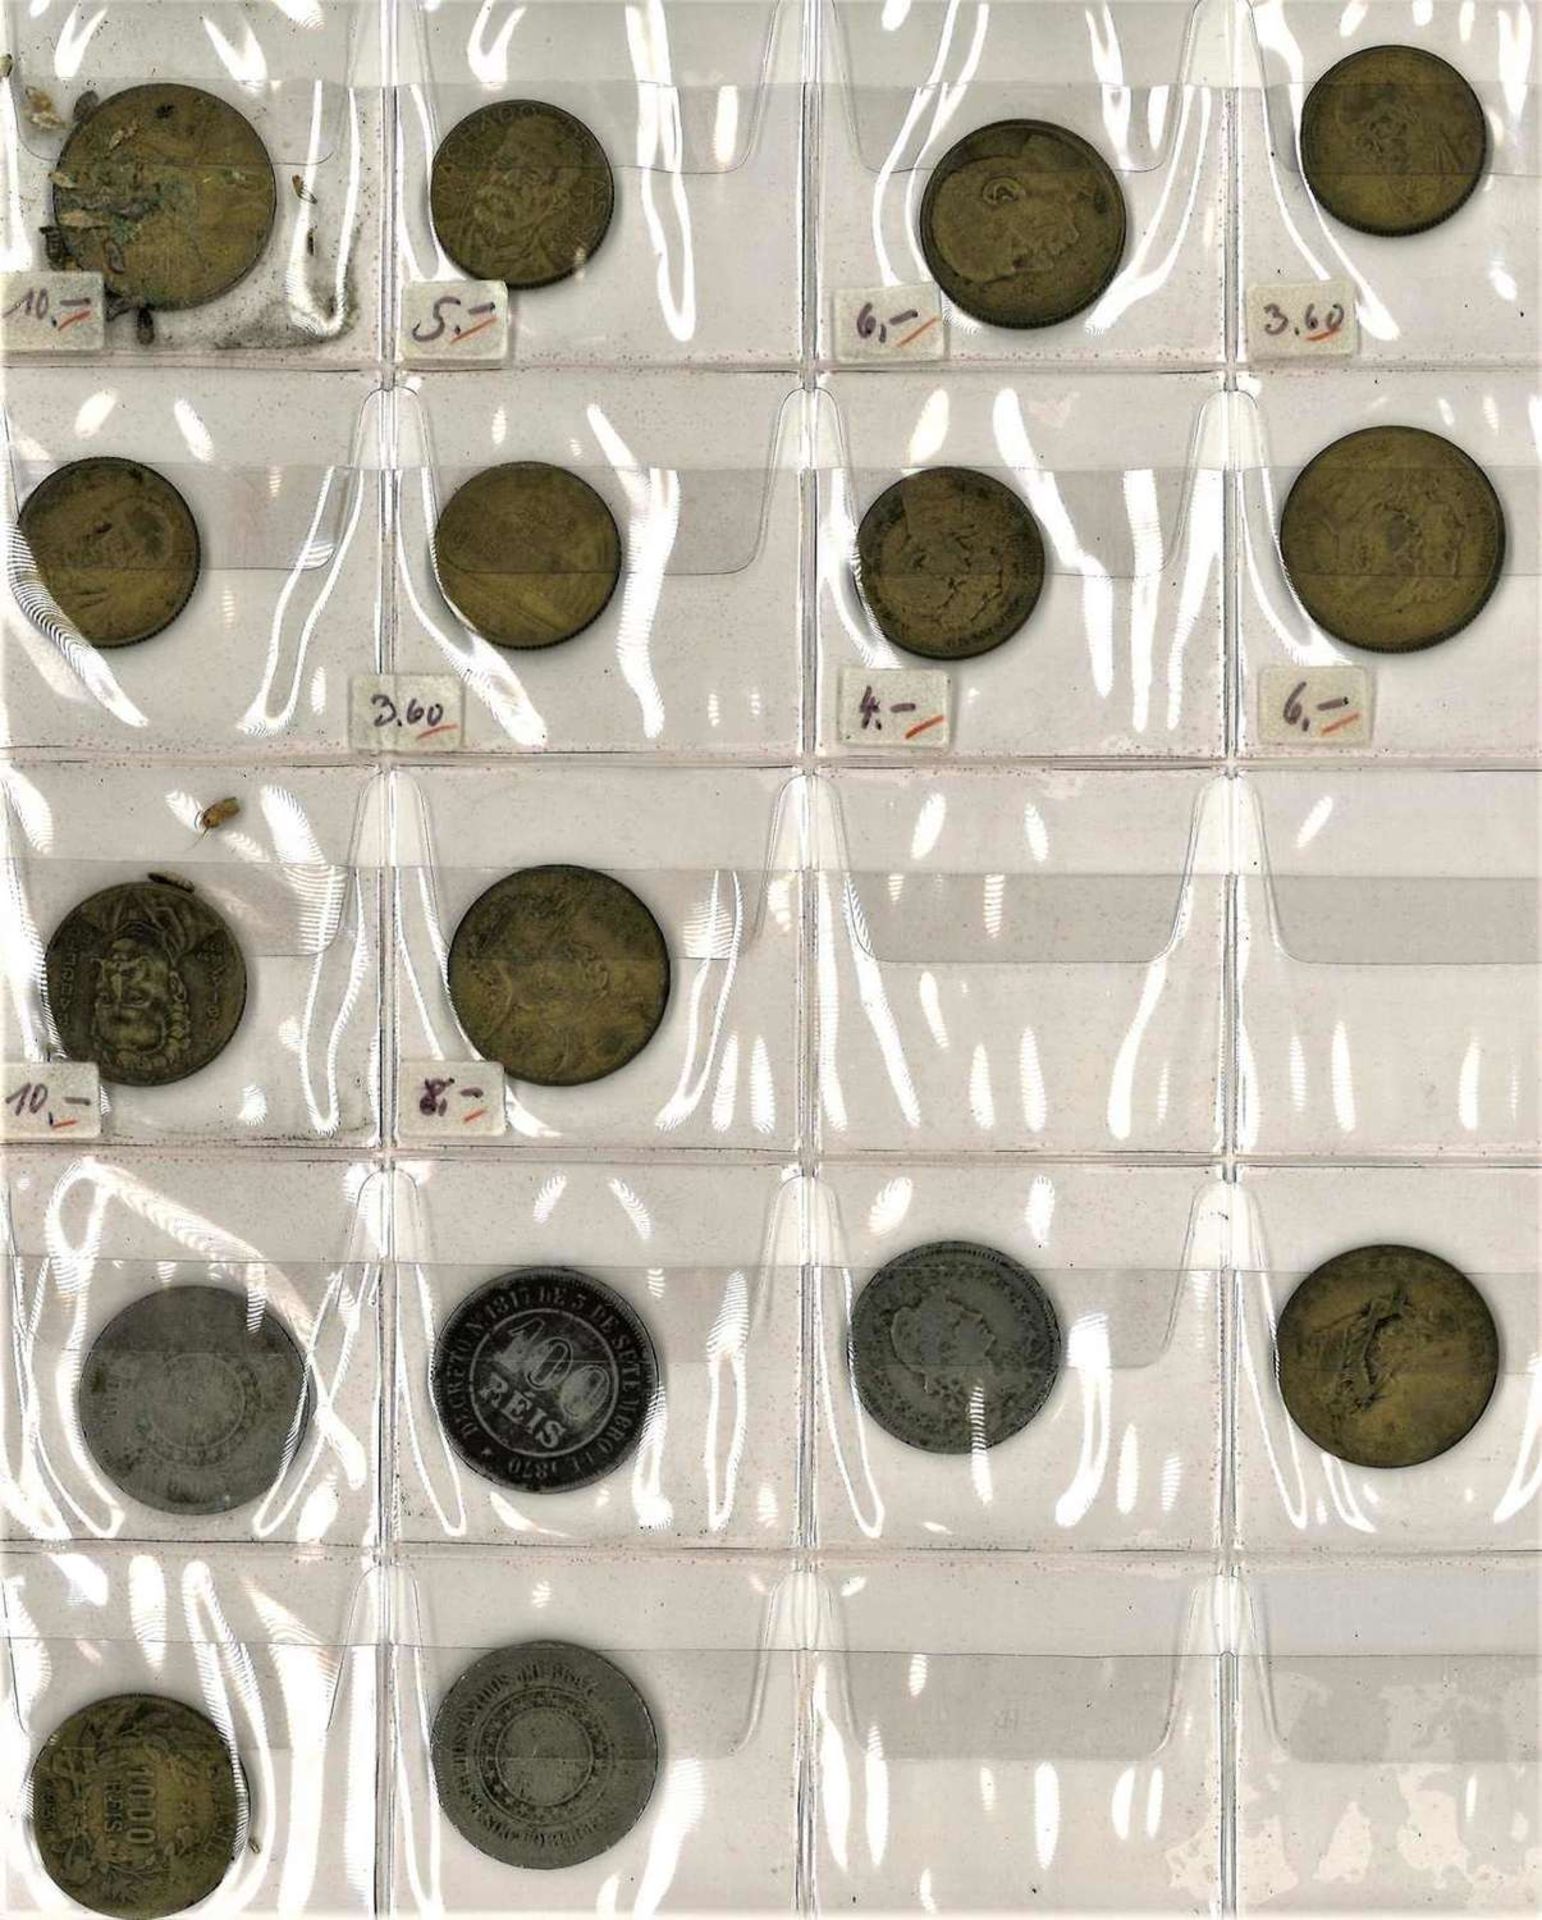 Lot Münzen alle Welt im Album, dabei z.B. Ceylon, Indien, Israel, Brasilien, Australien etc.